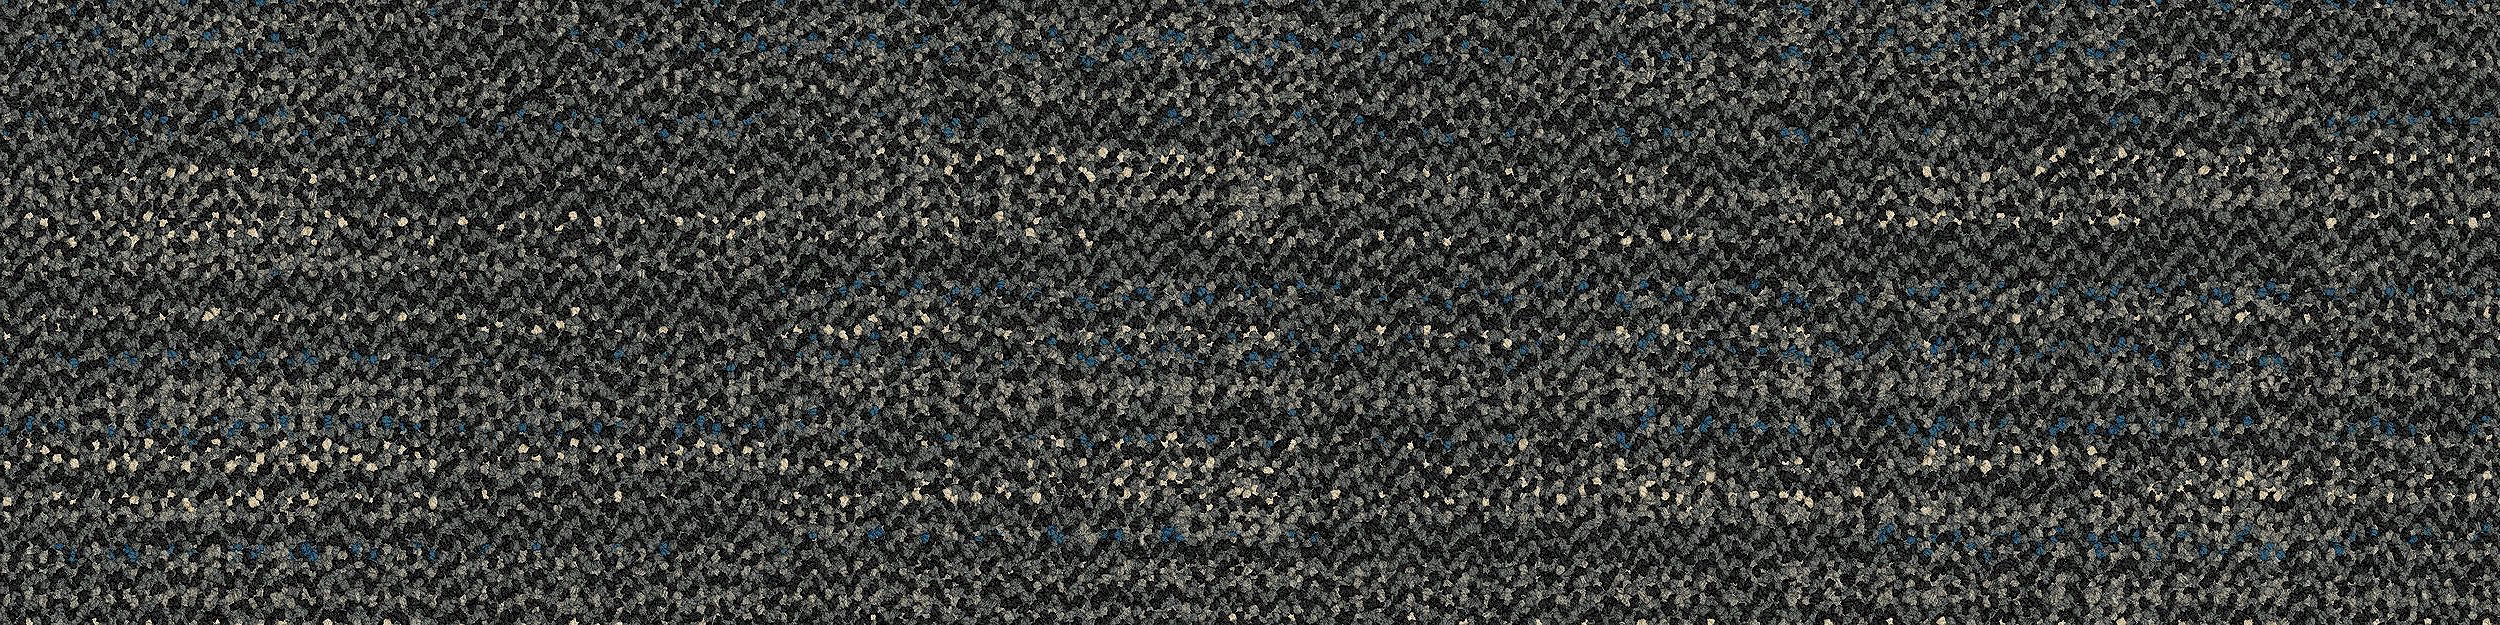 Bitrate Carpet Tile In Dark Aqua image number 7